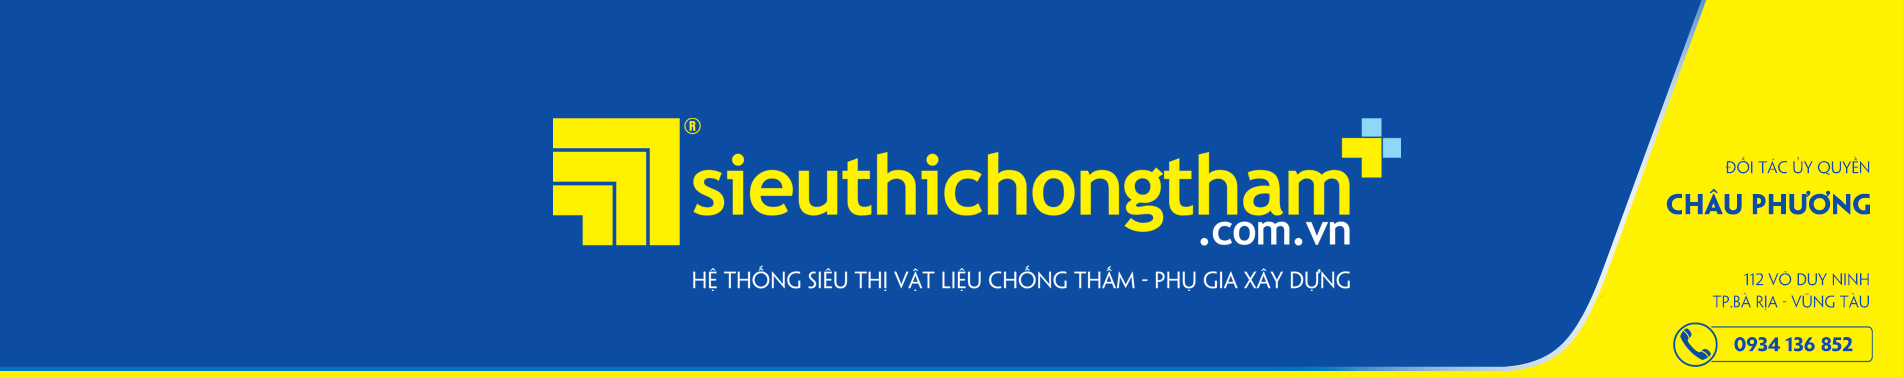 Chau Phuong Banner